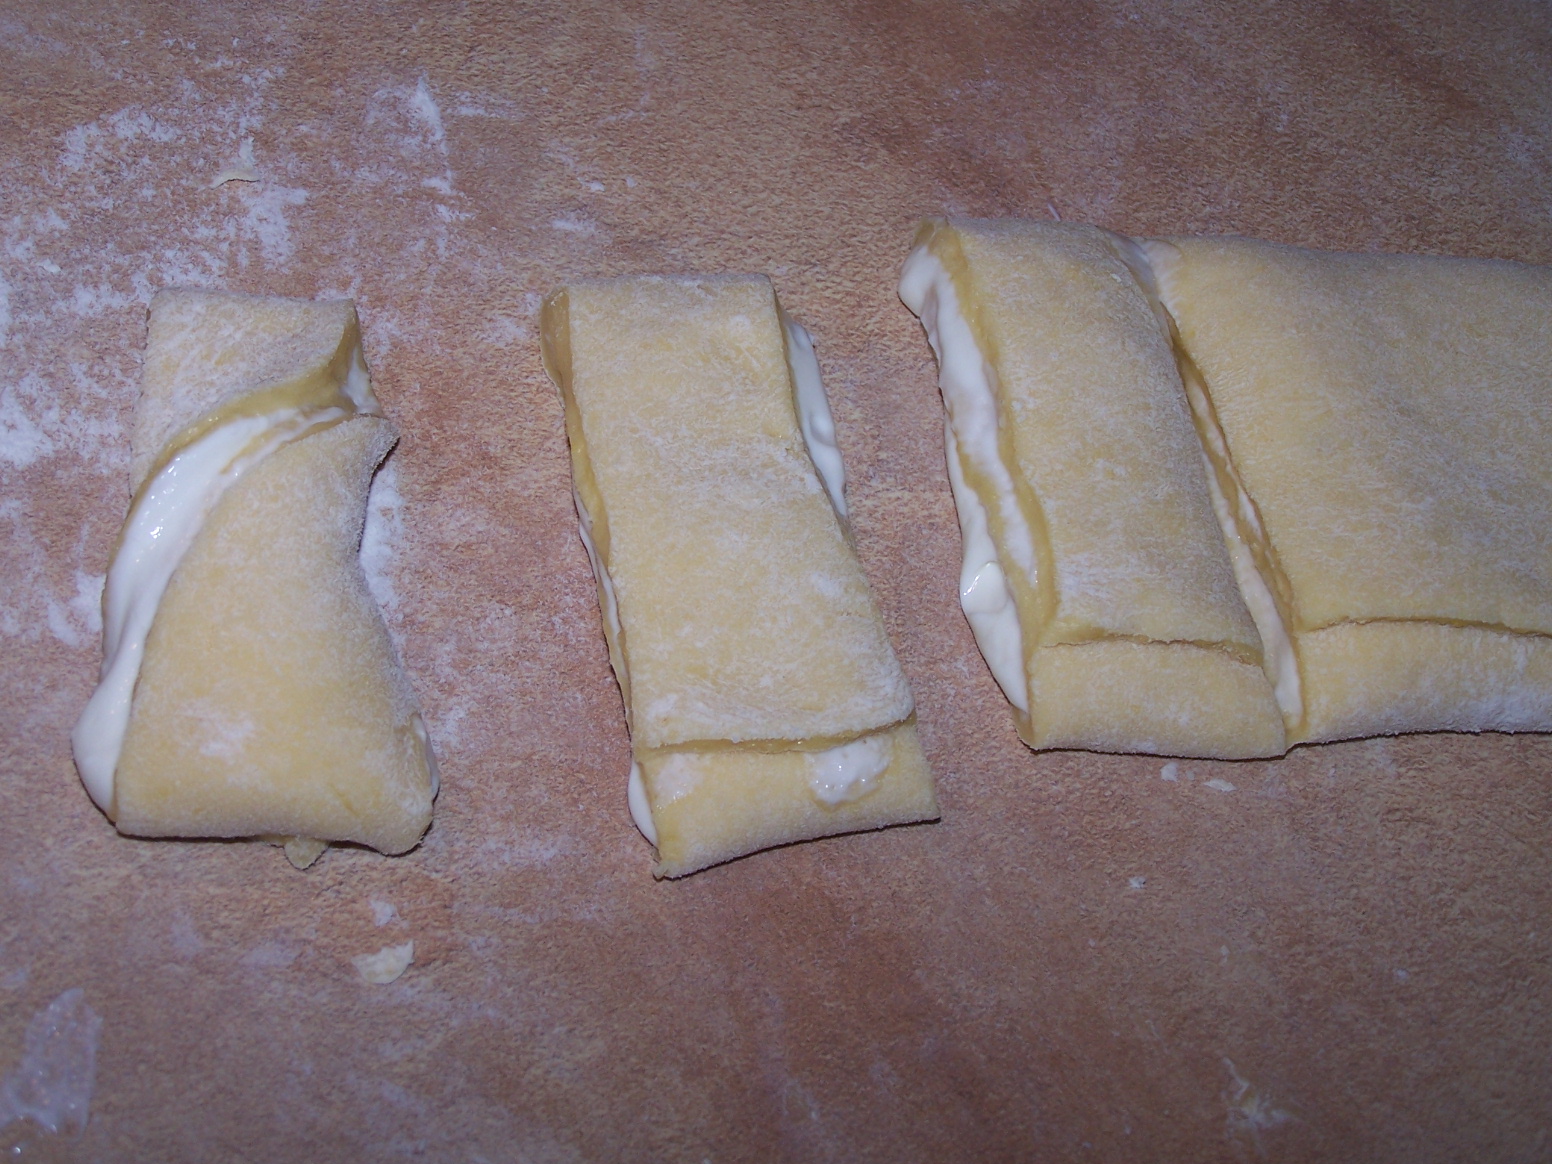 I jeszcze jedna propozycja drożdżówek z serem, czyli bułeczki i muszki :)